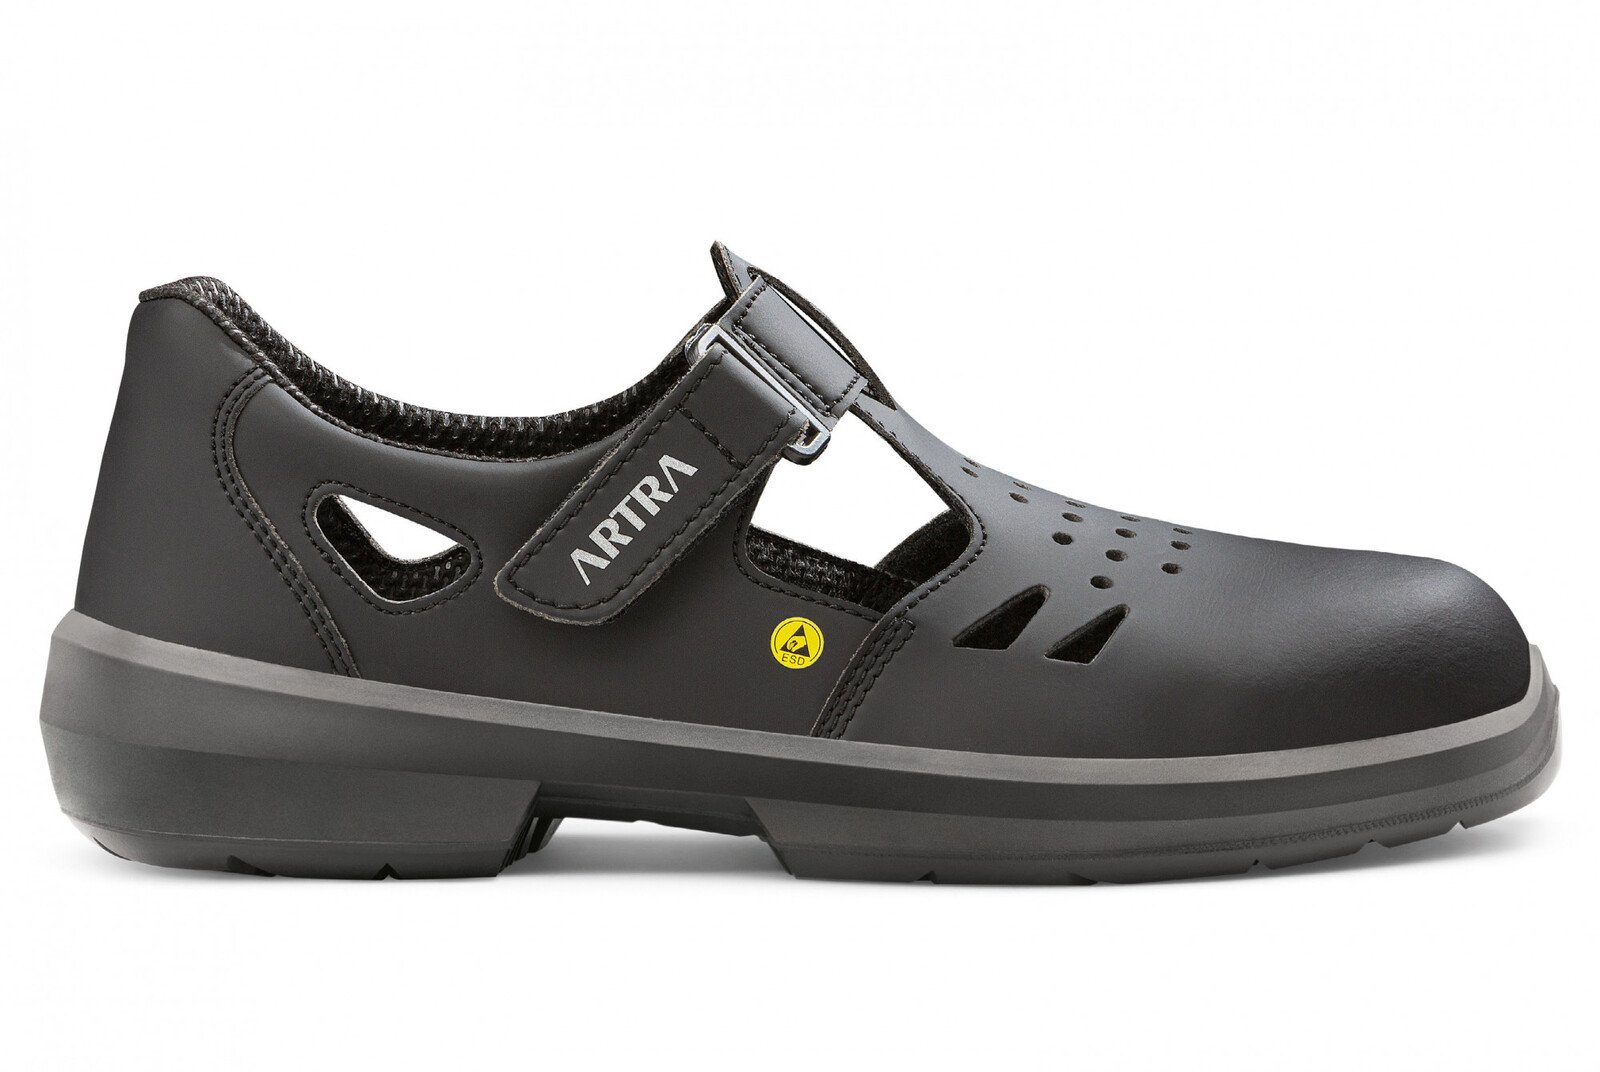 Bezpečnostné sandále Artra Armen 9008 6760 S1P SRC ESD MF - veľkosť: 39, farba: čierna